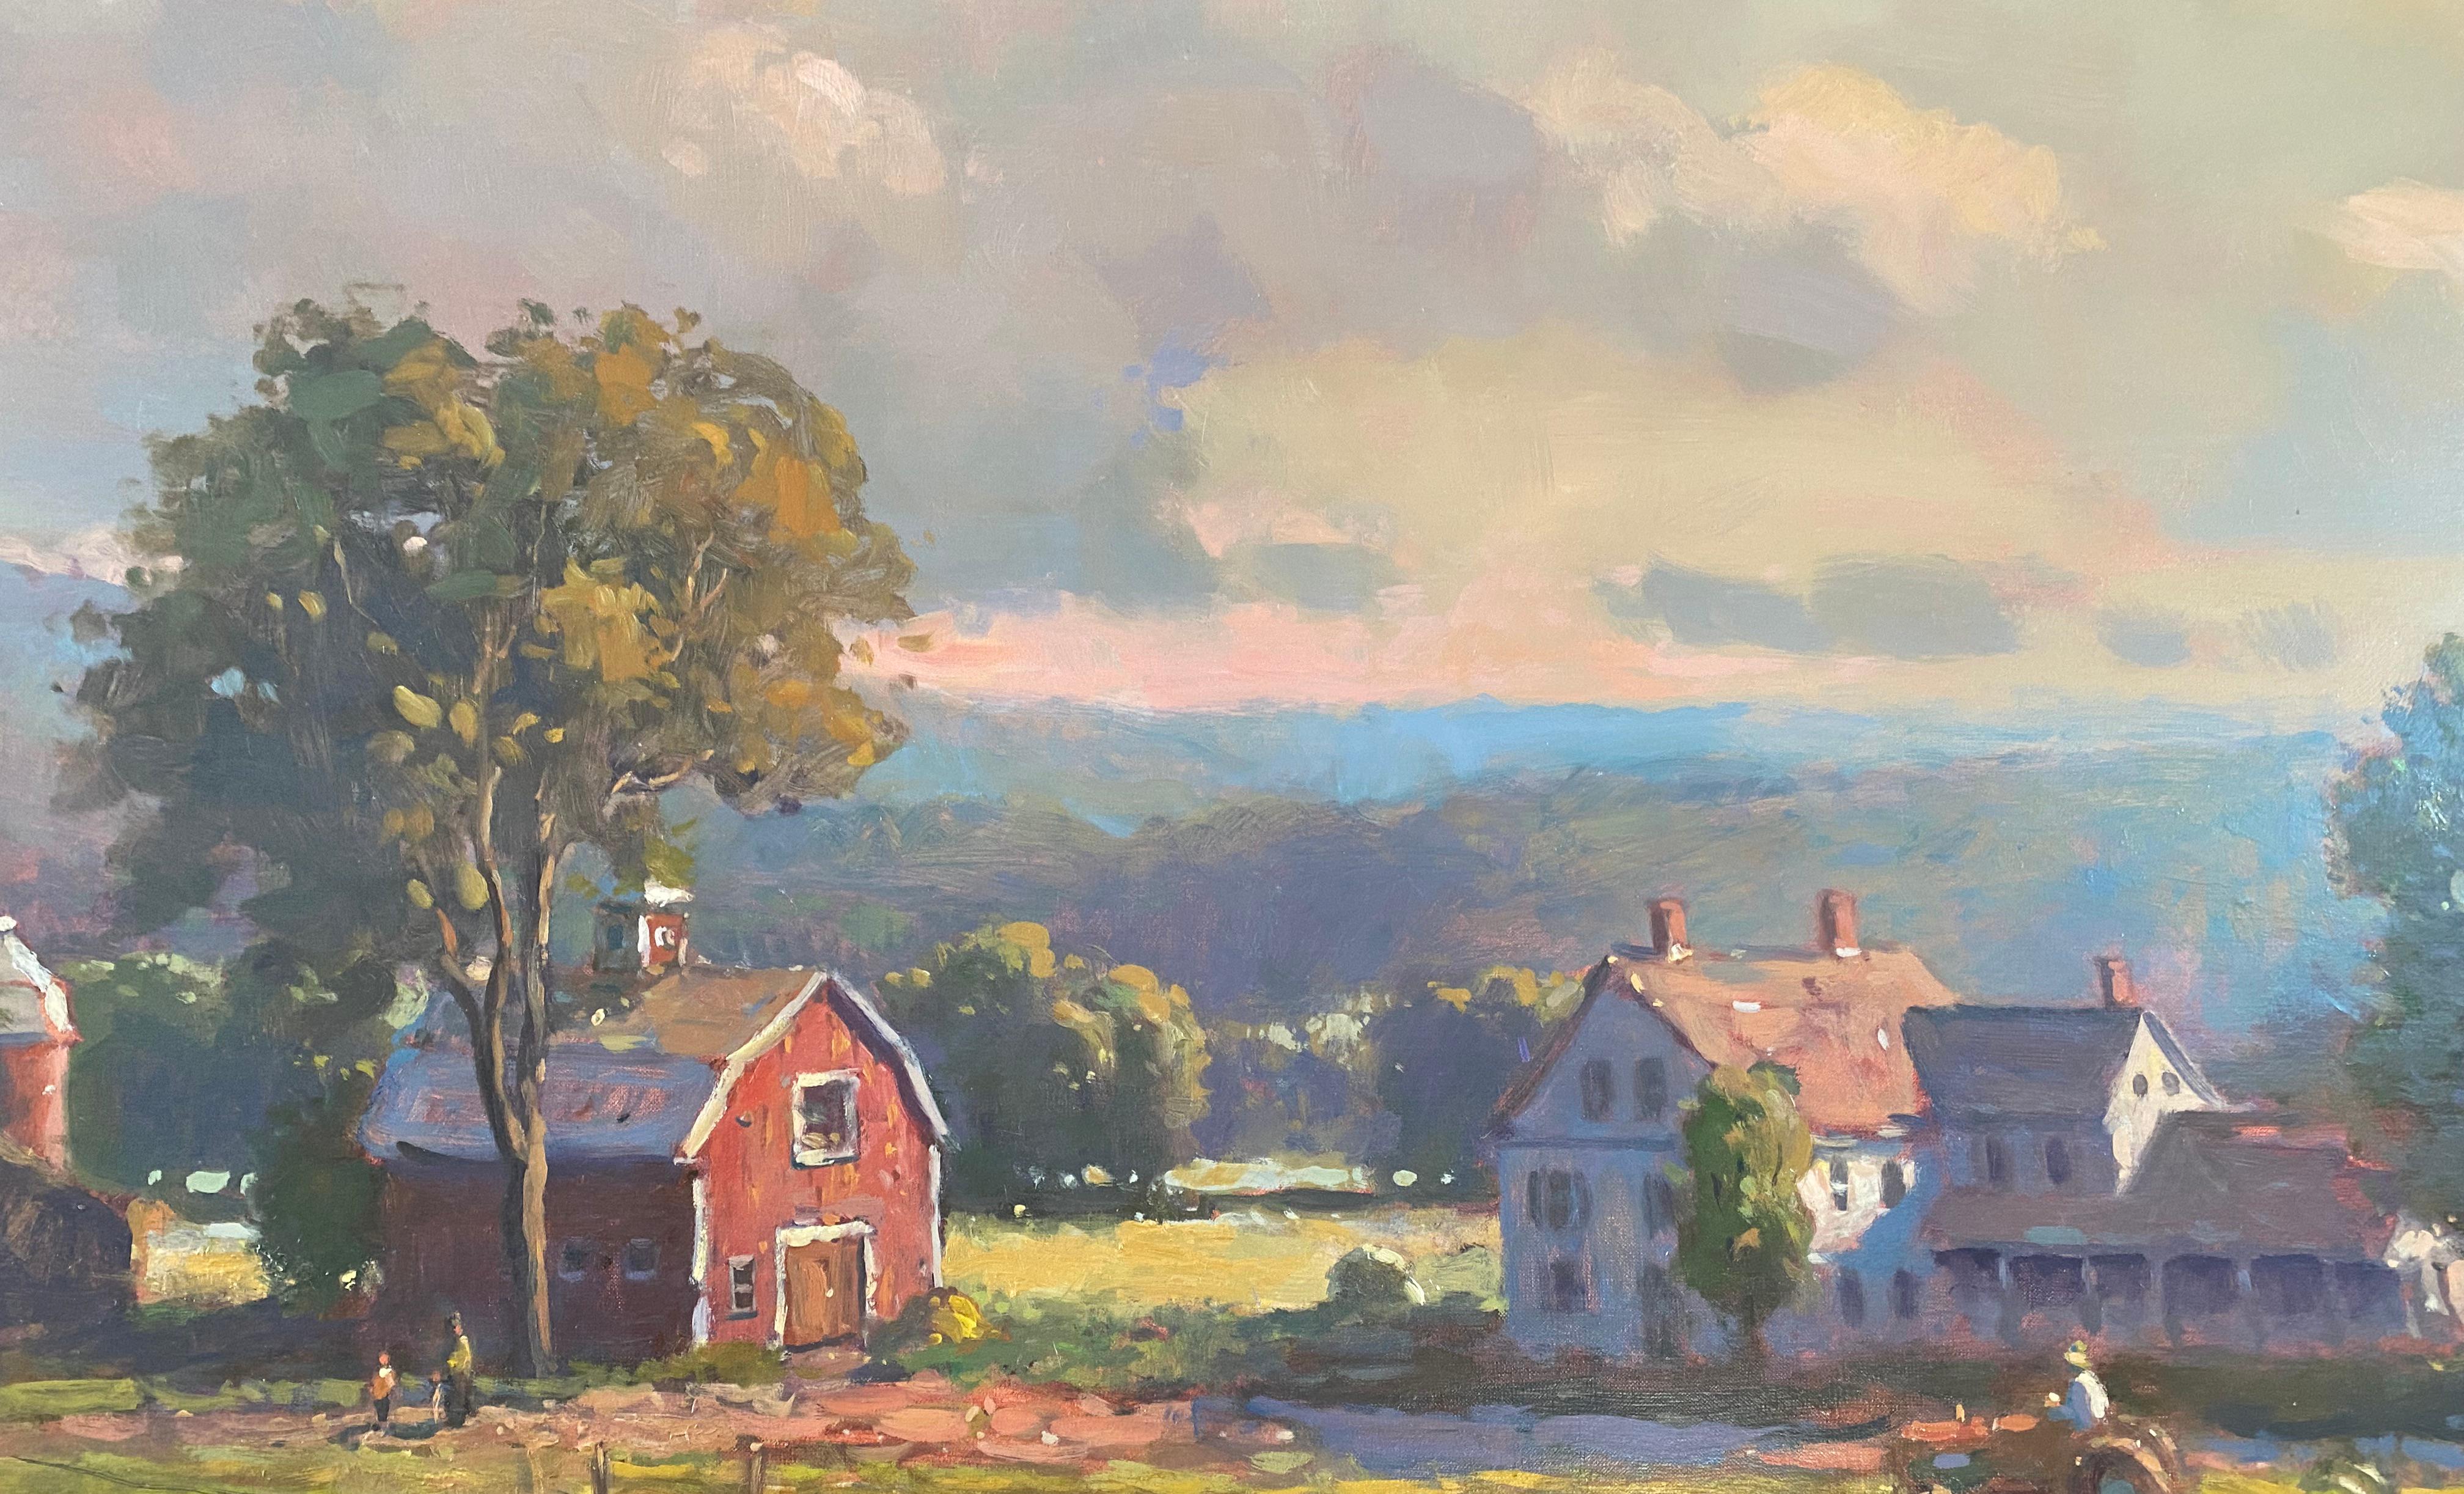 Cette grande peinture à l'huile de John Traynor représente une scène de la Nouvelle-Angleterre. Des vaches sont visibles devant une longue clôture de piquets, avec une grange et une maison rouges derrière la clôture et des arbres verts luxuriants de